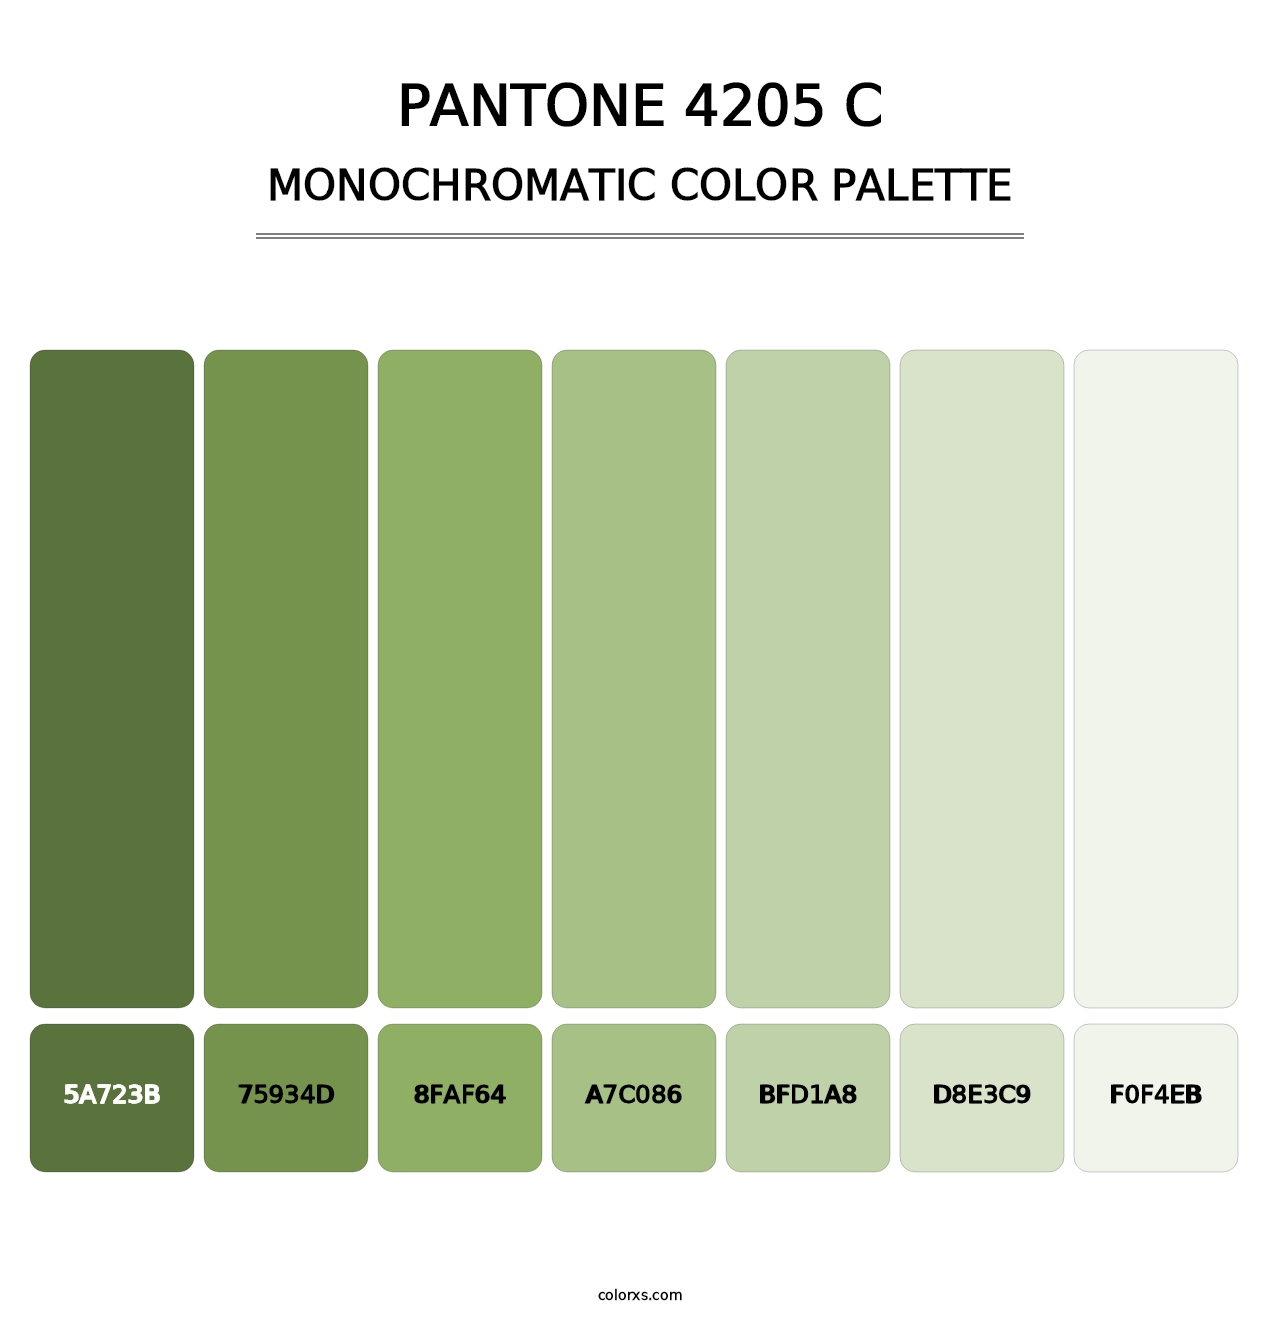 PANTONE 4205 C - Monochromatic Color Palette